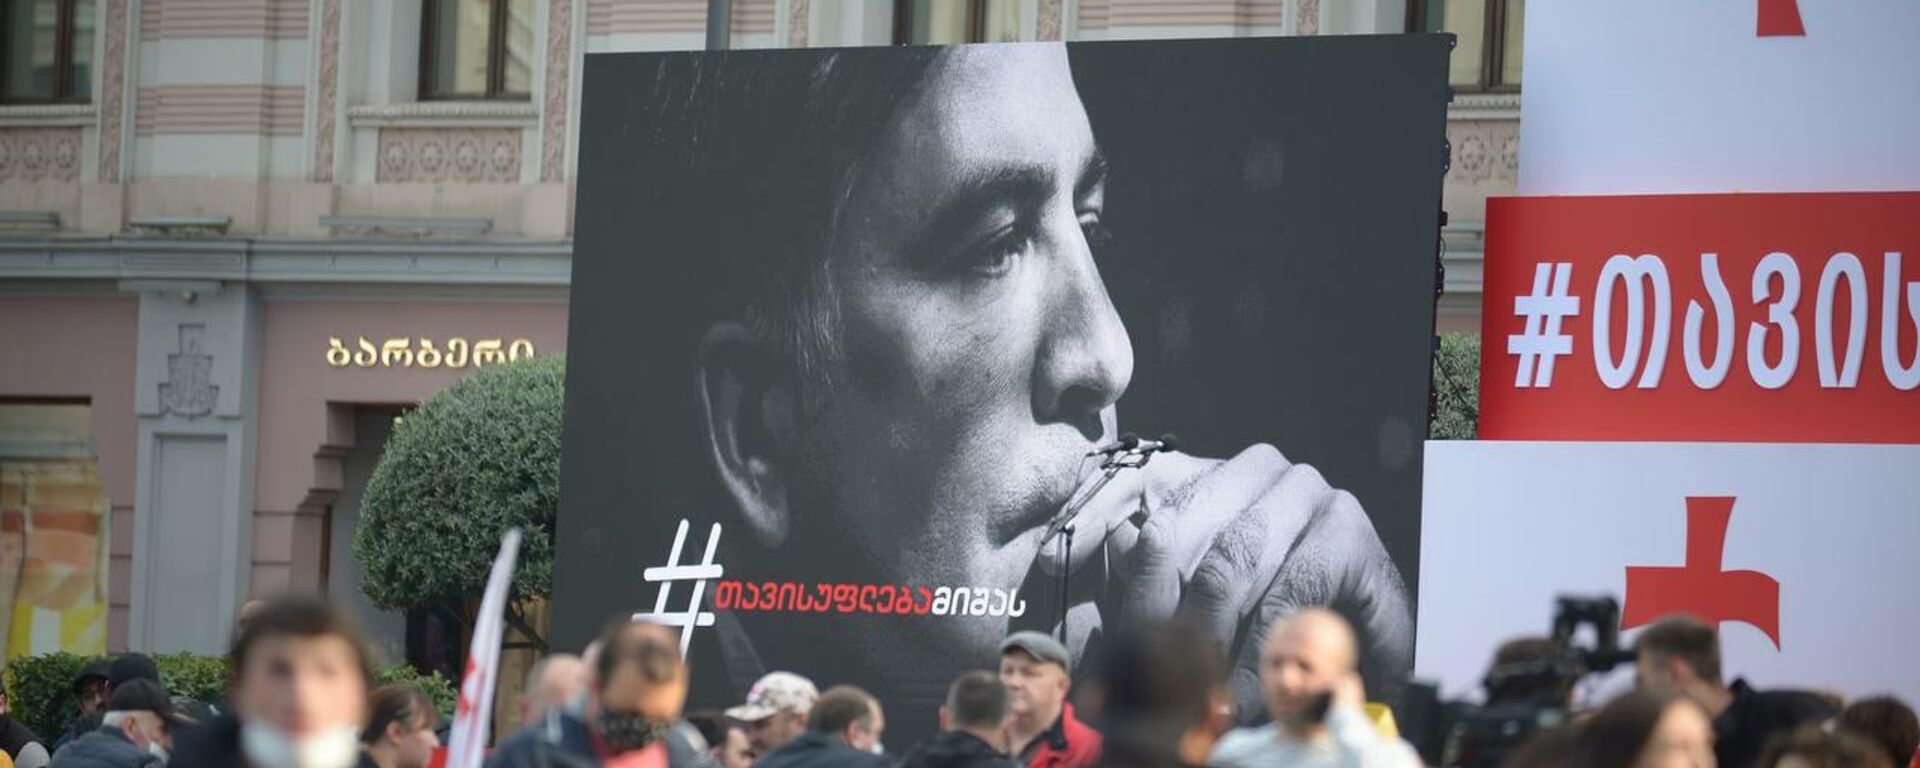 Свободу Саакашвили - акция протеста оппозиции и ЕНД на площади Свободы 14 октября - Sputnik Грузия, 1920, 09.11.2021